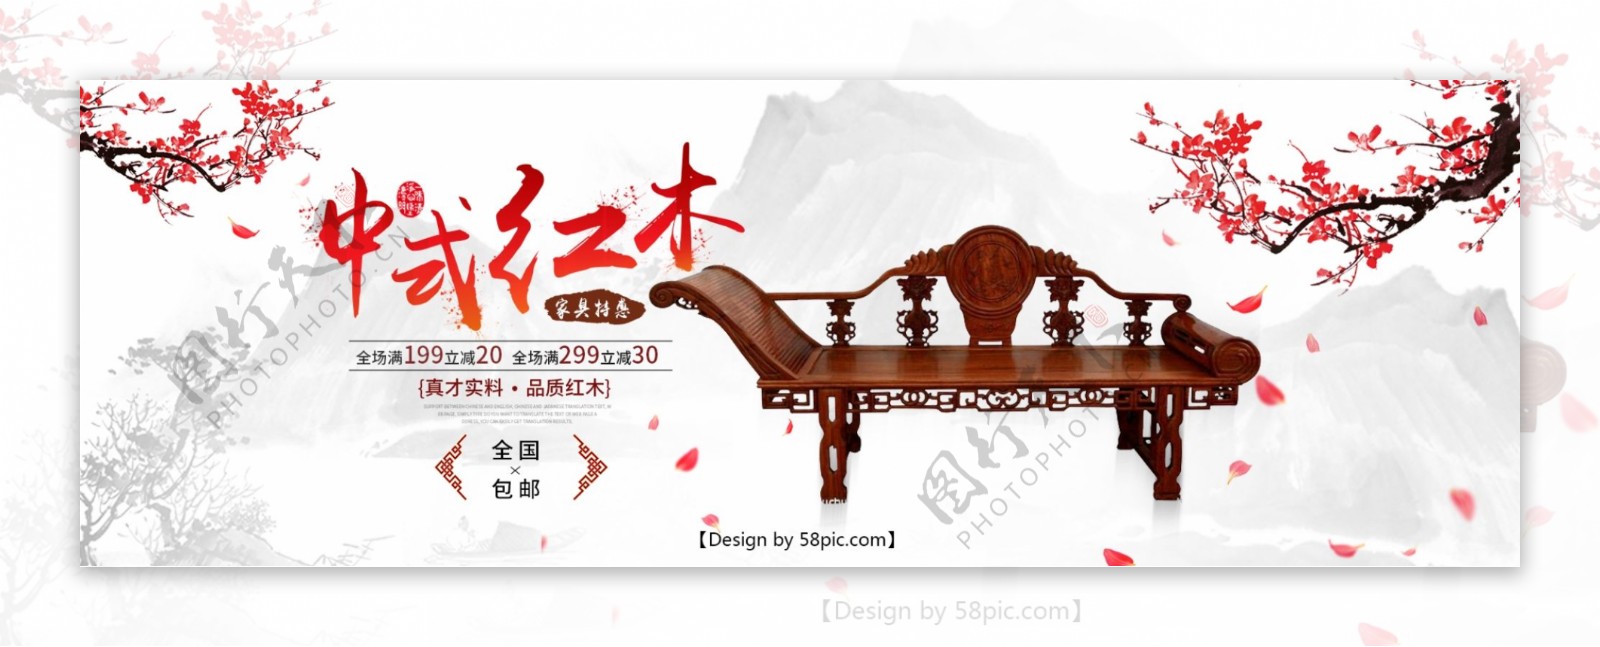 淘宝电商家居家具中国风木椅全屏海报PSD模版